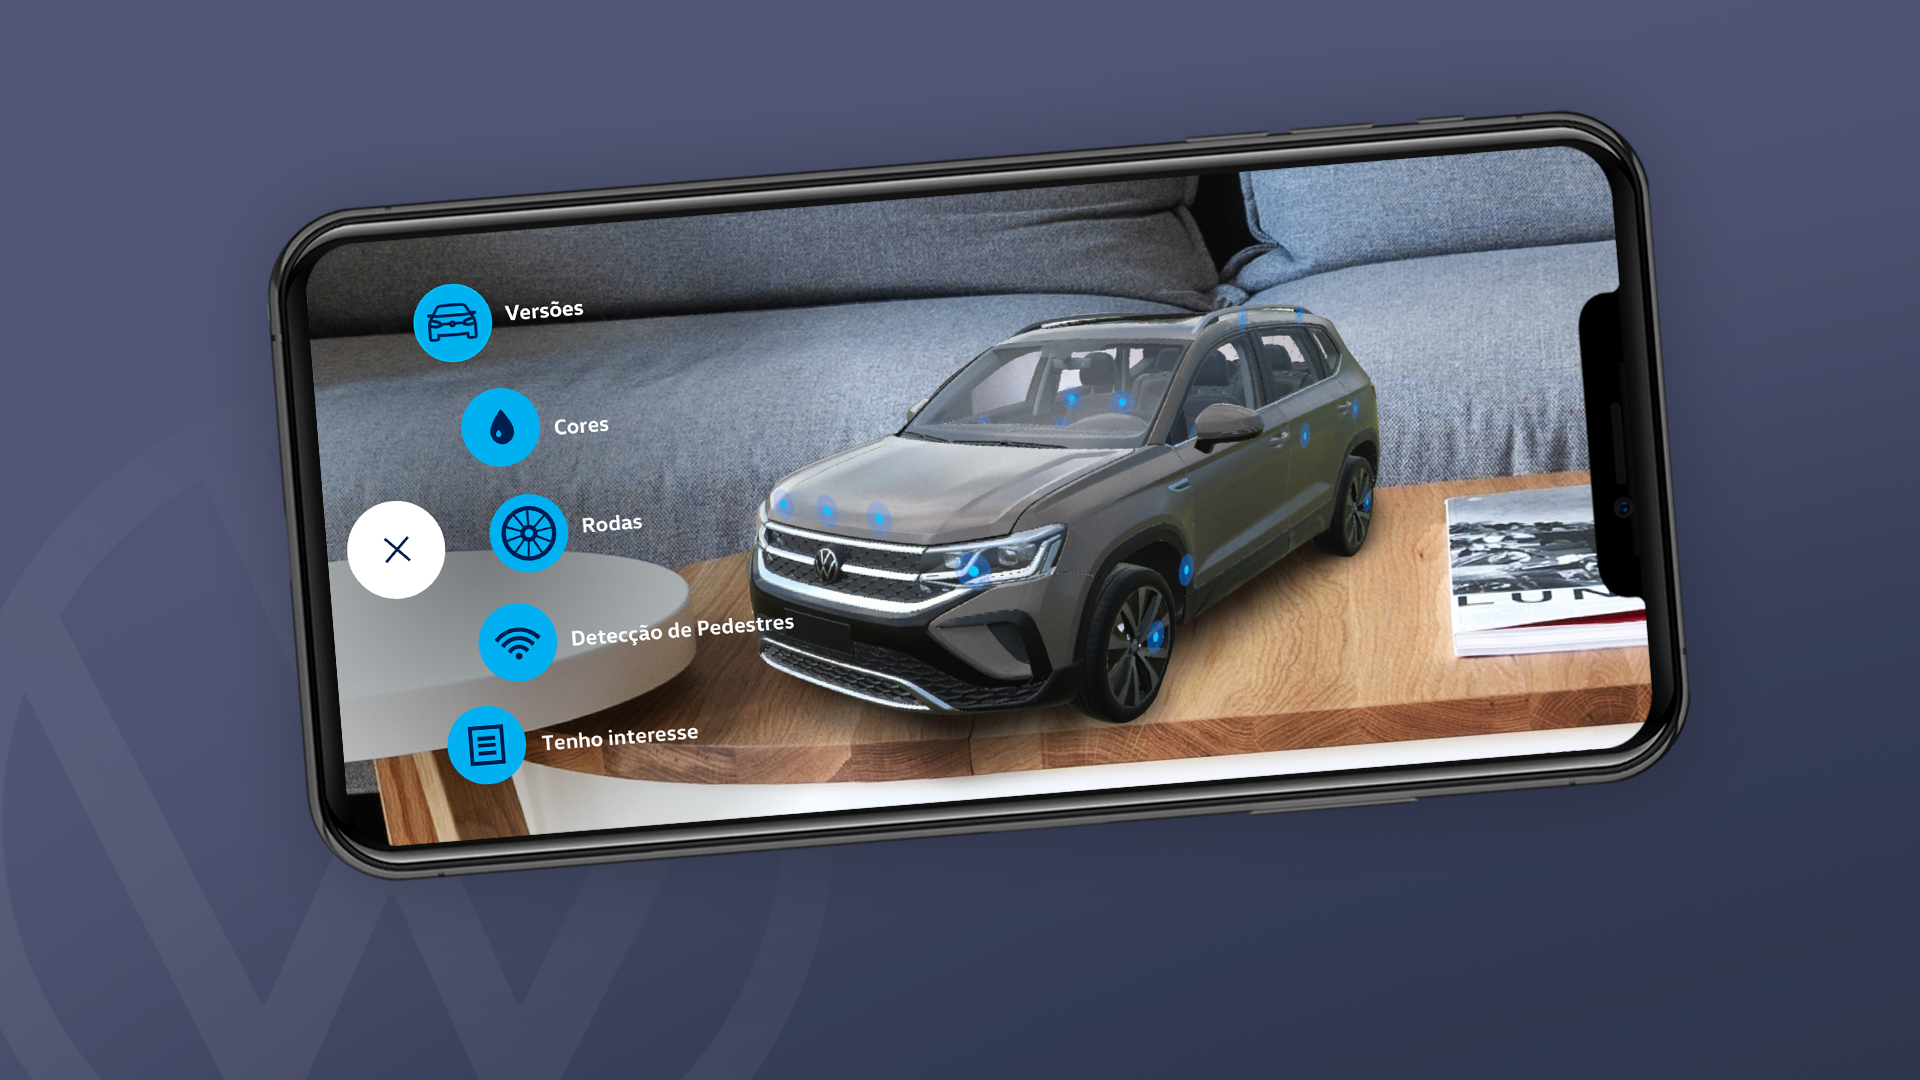 Taos - VW Play Apps ganha novos aplicativos de entretenimento